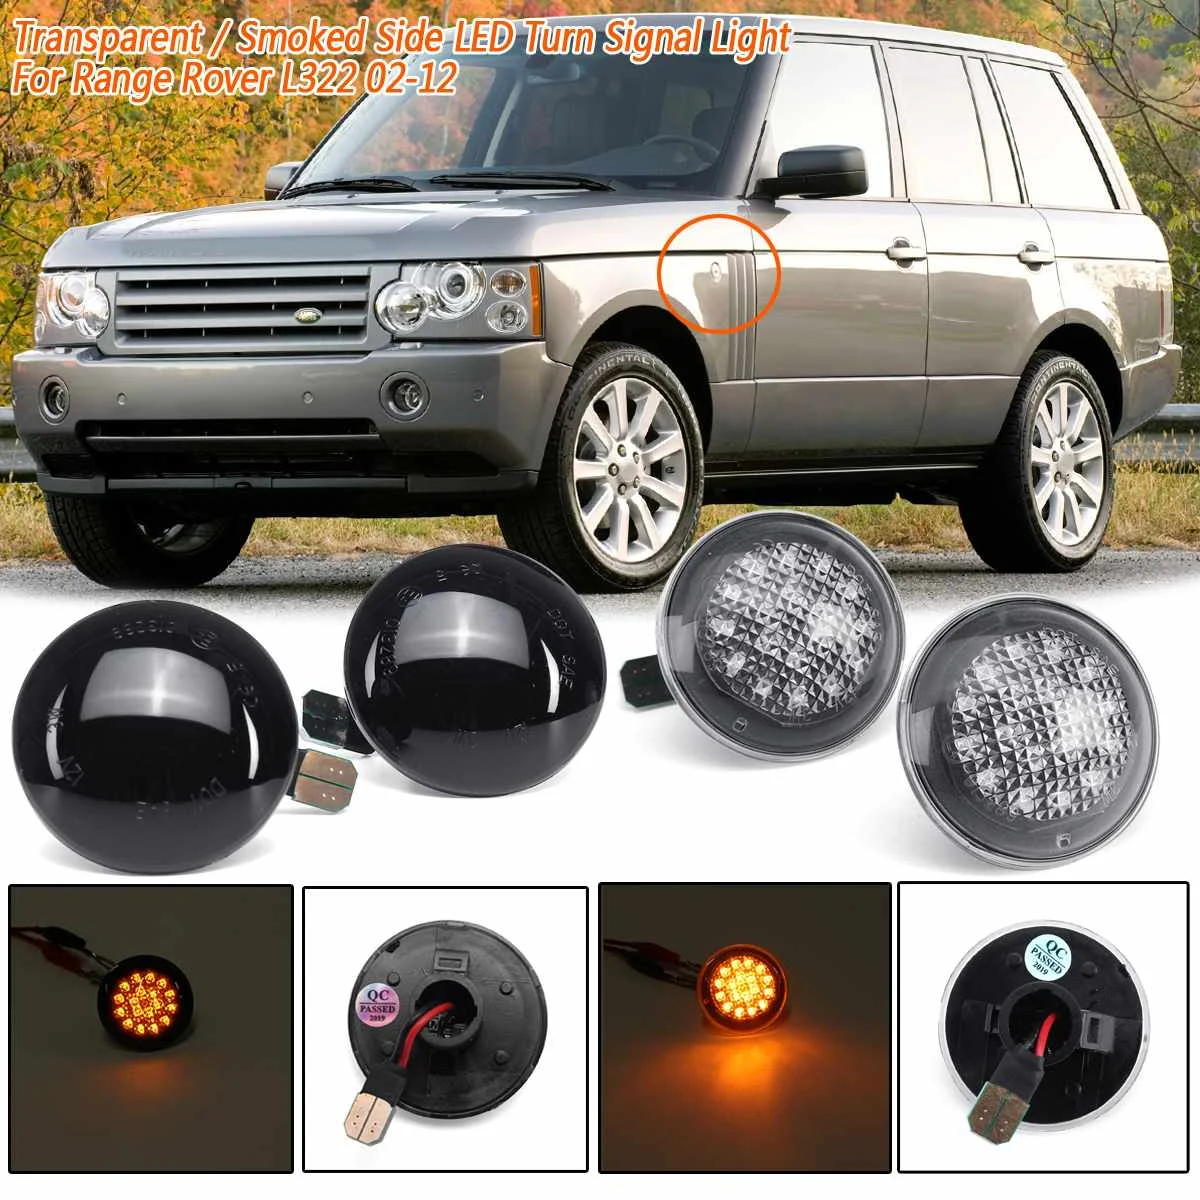 2X Прозрачный/дымчатый боковой индикатор светодиодный светильник сигнала поворота для Range Rover L322 2002-2012 XGB500020A XGB500020 IRR/RA12L32202SM